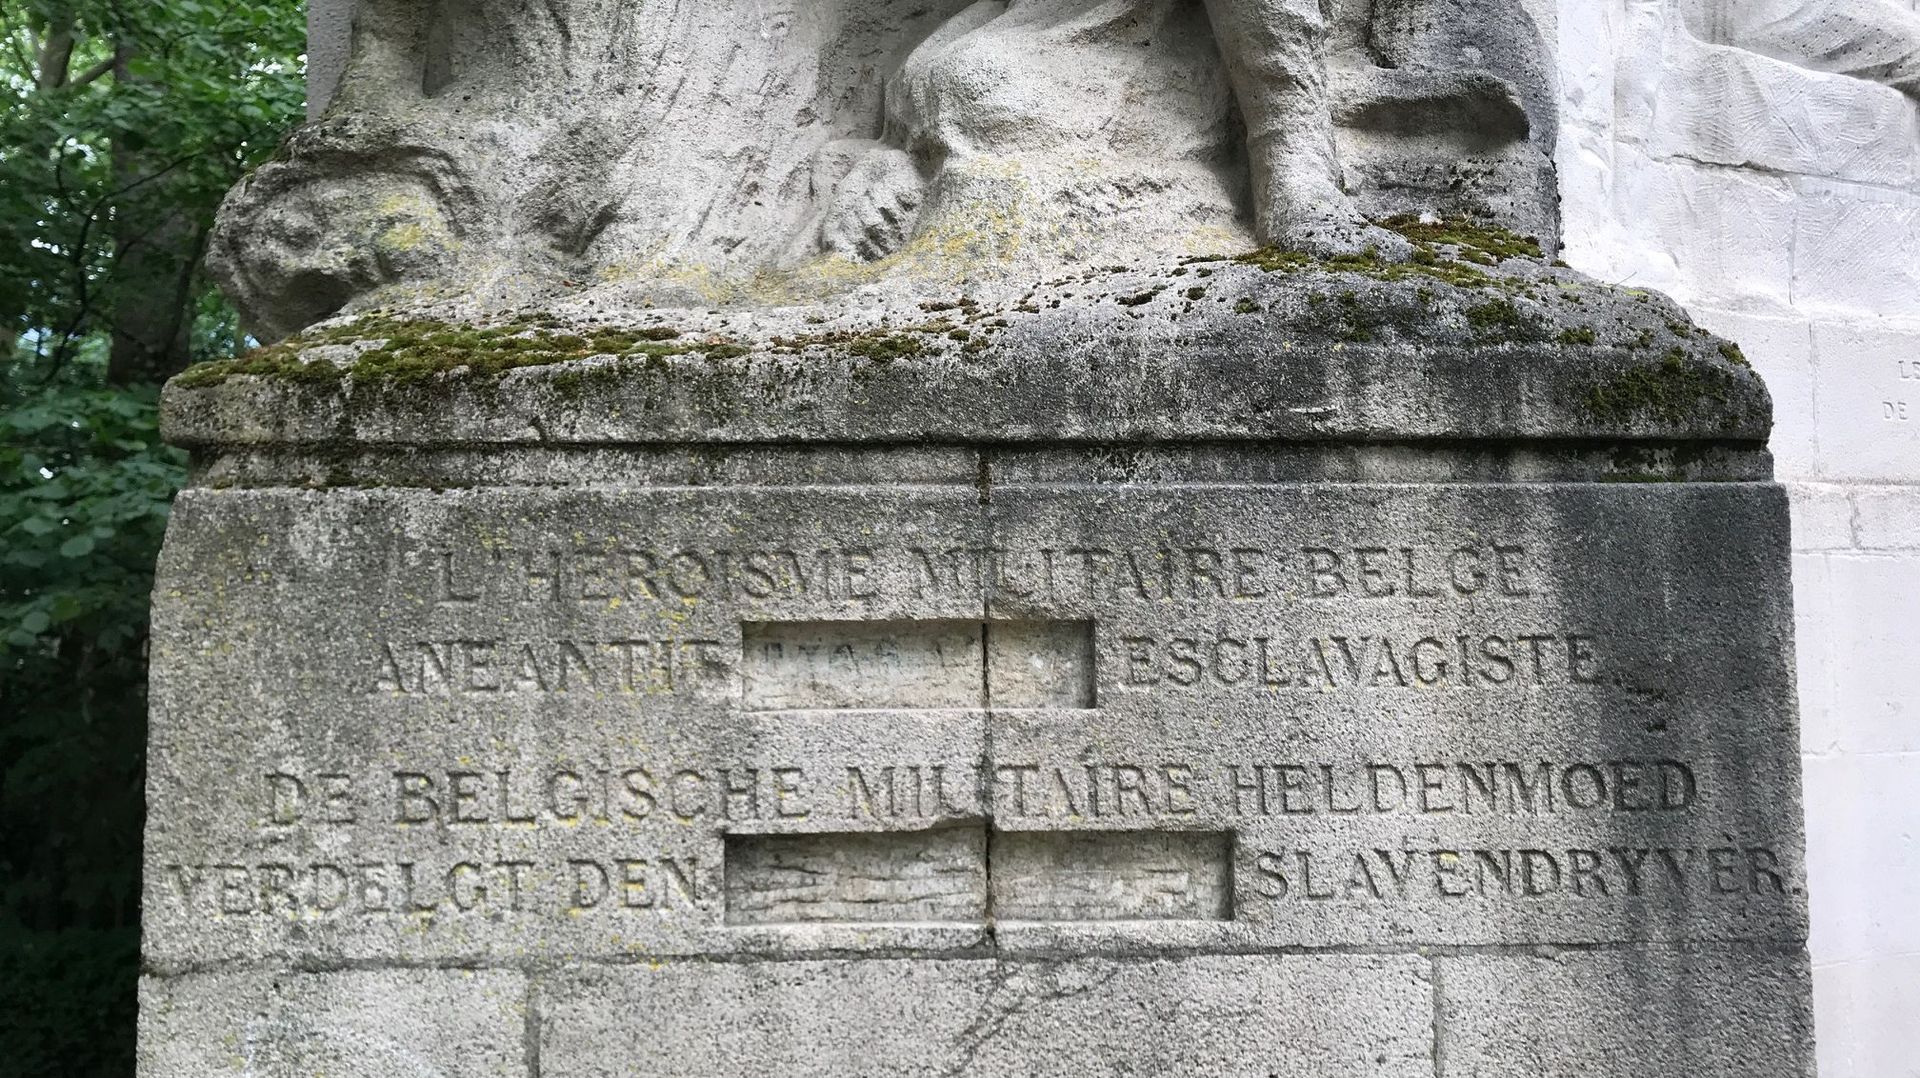 "L'héroïsme militaire belge anéantit l'Arabe esclavagiste" : le monument doublement polémique du Parc du Cinquantenaire